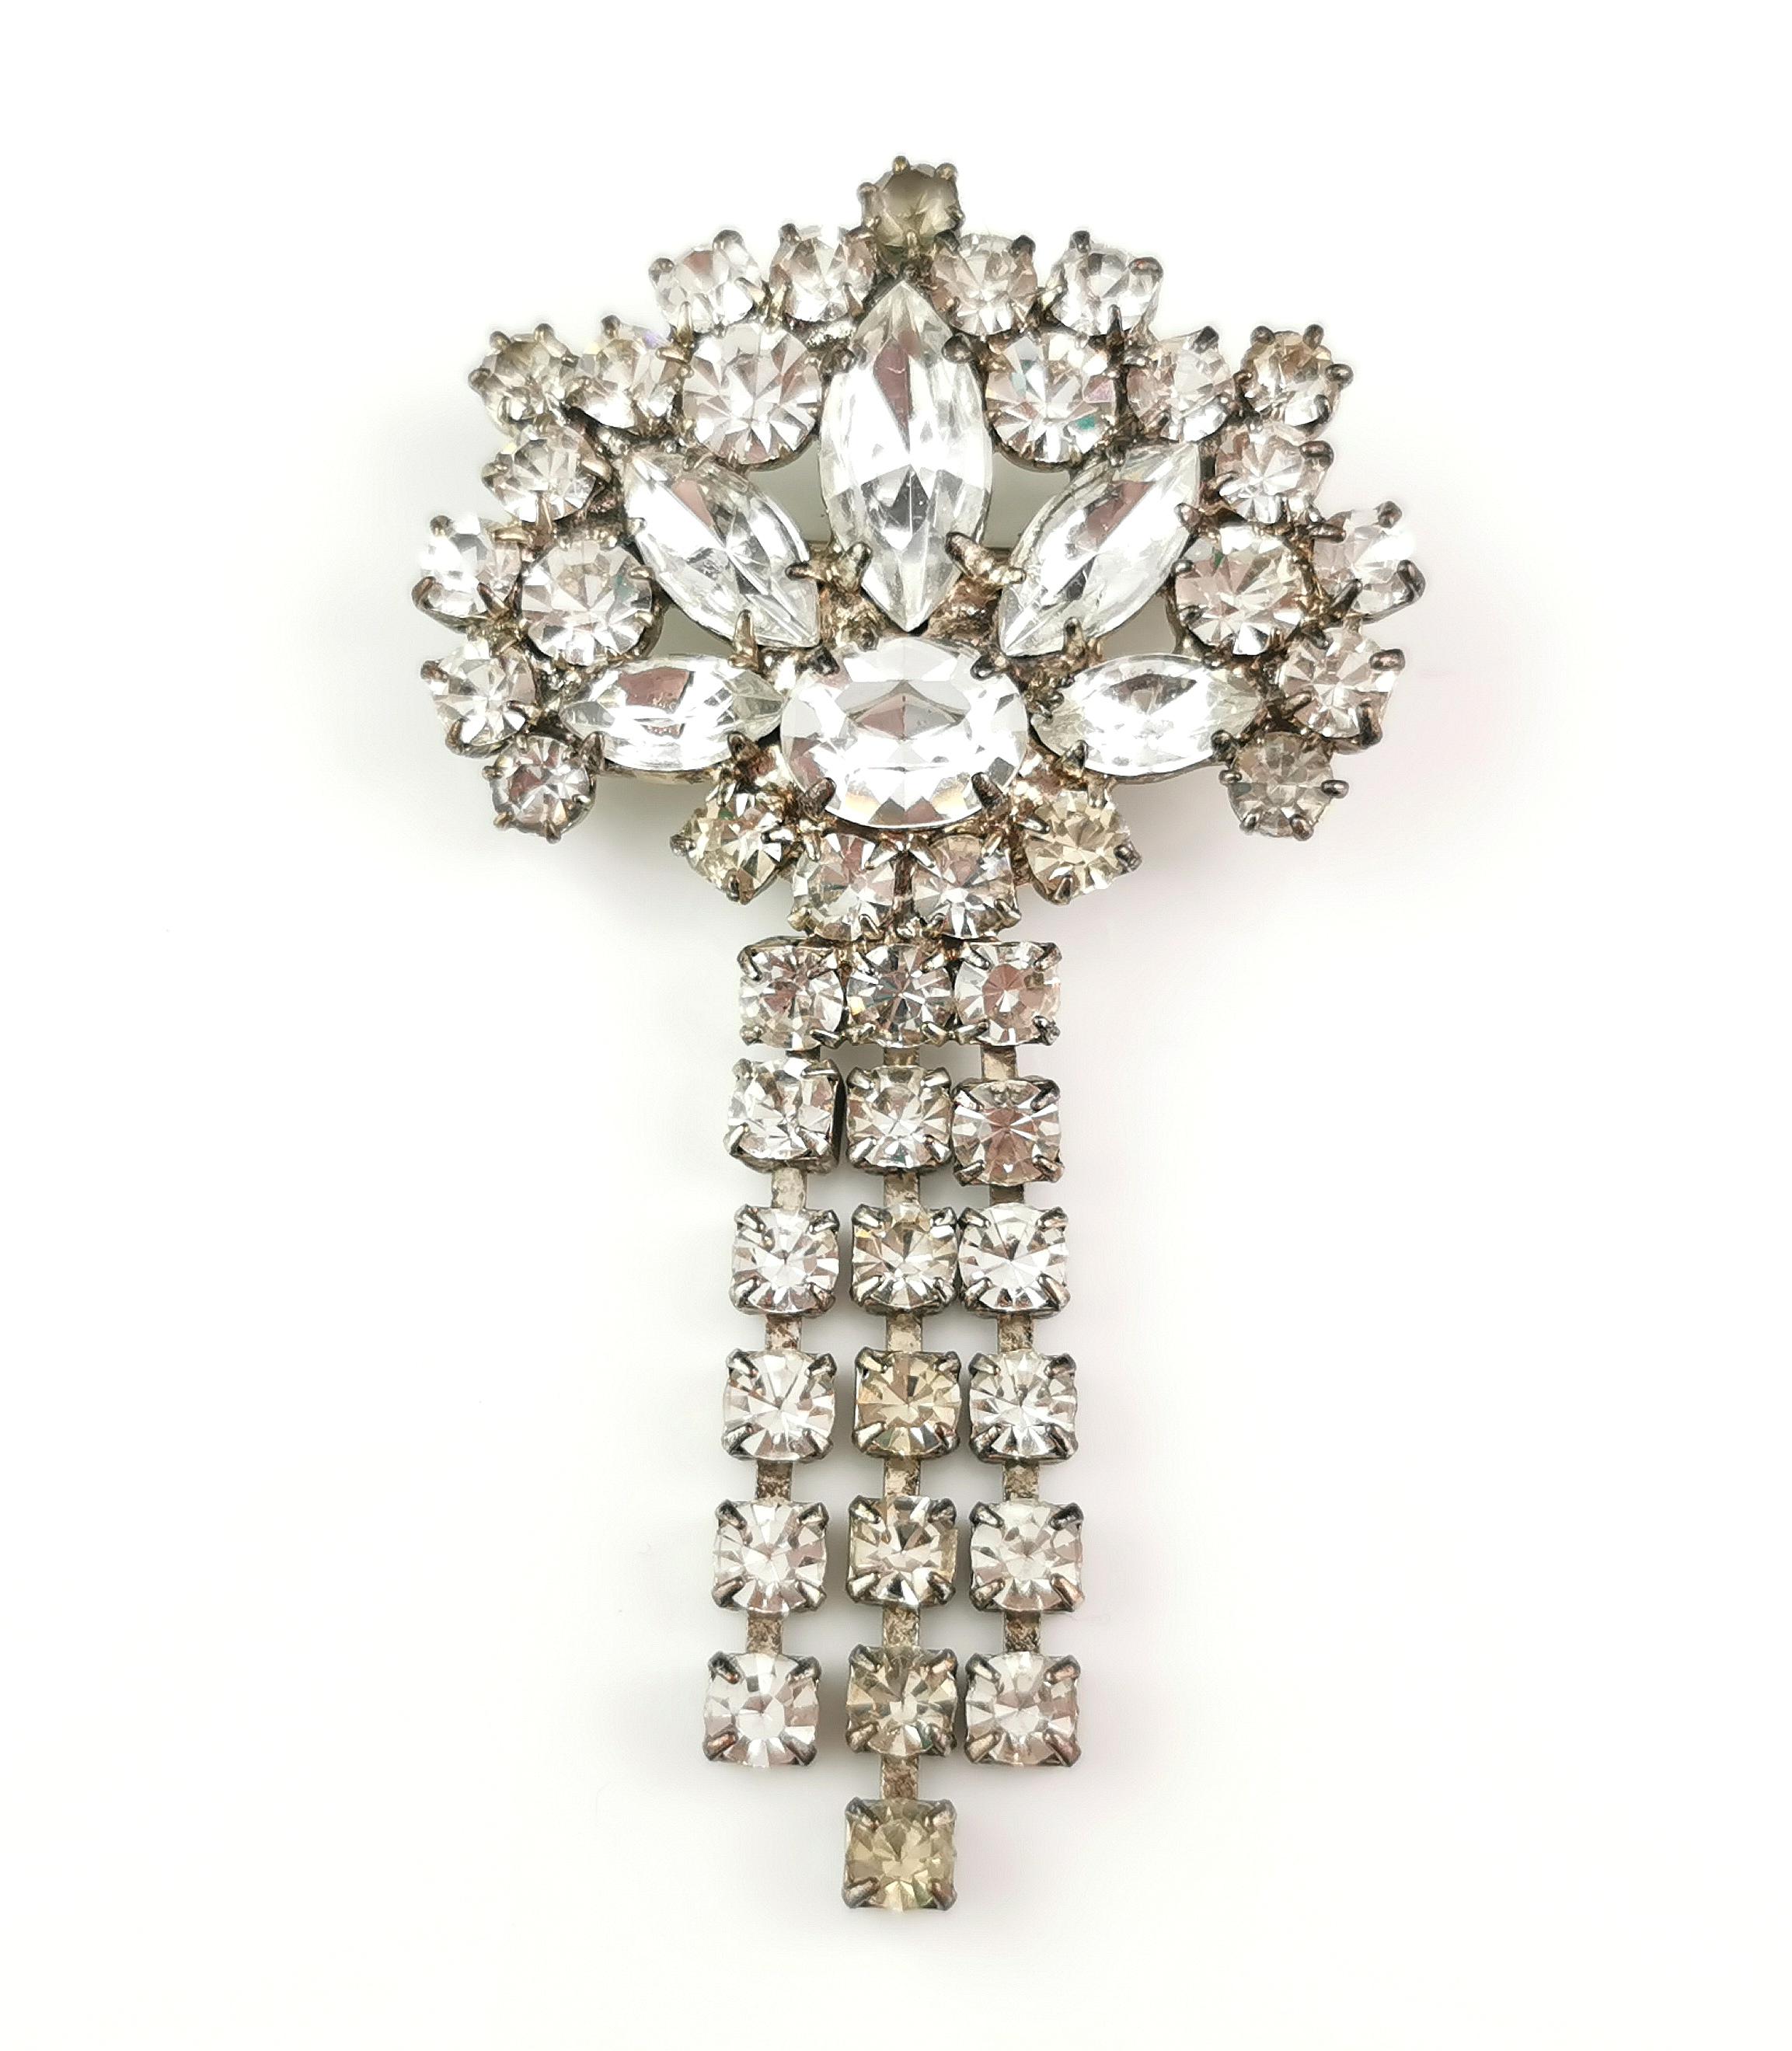 Une magnifique broche pendante en diamants vintage et étincelante.

Empruntant ses éléments de style à l'ère Art déco, il présente un sommet en forme d'éventail serti de différentes coupes de pâte, ainsi qu'une ravissante pampille, chacune des